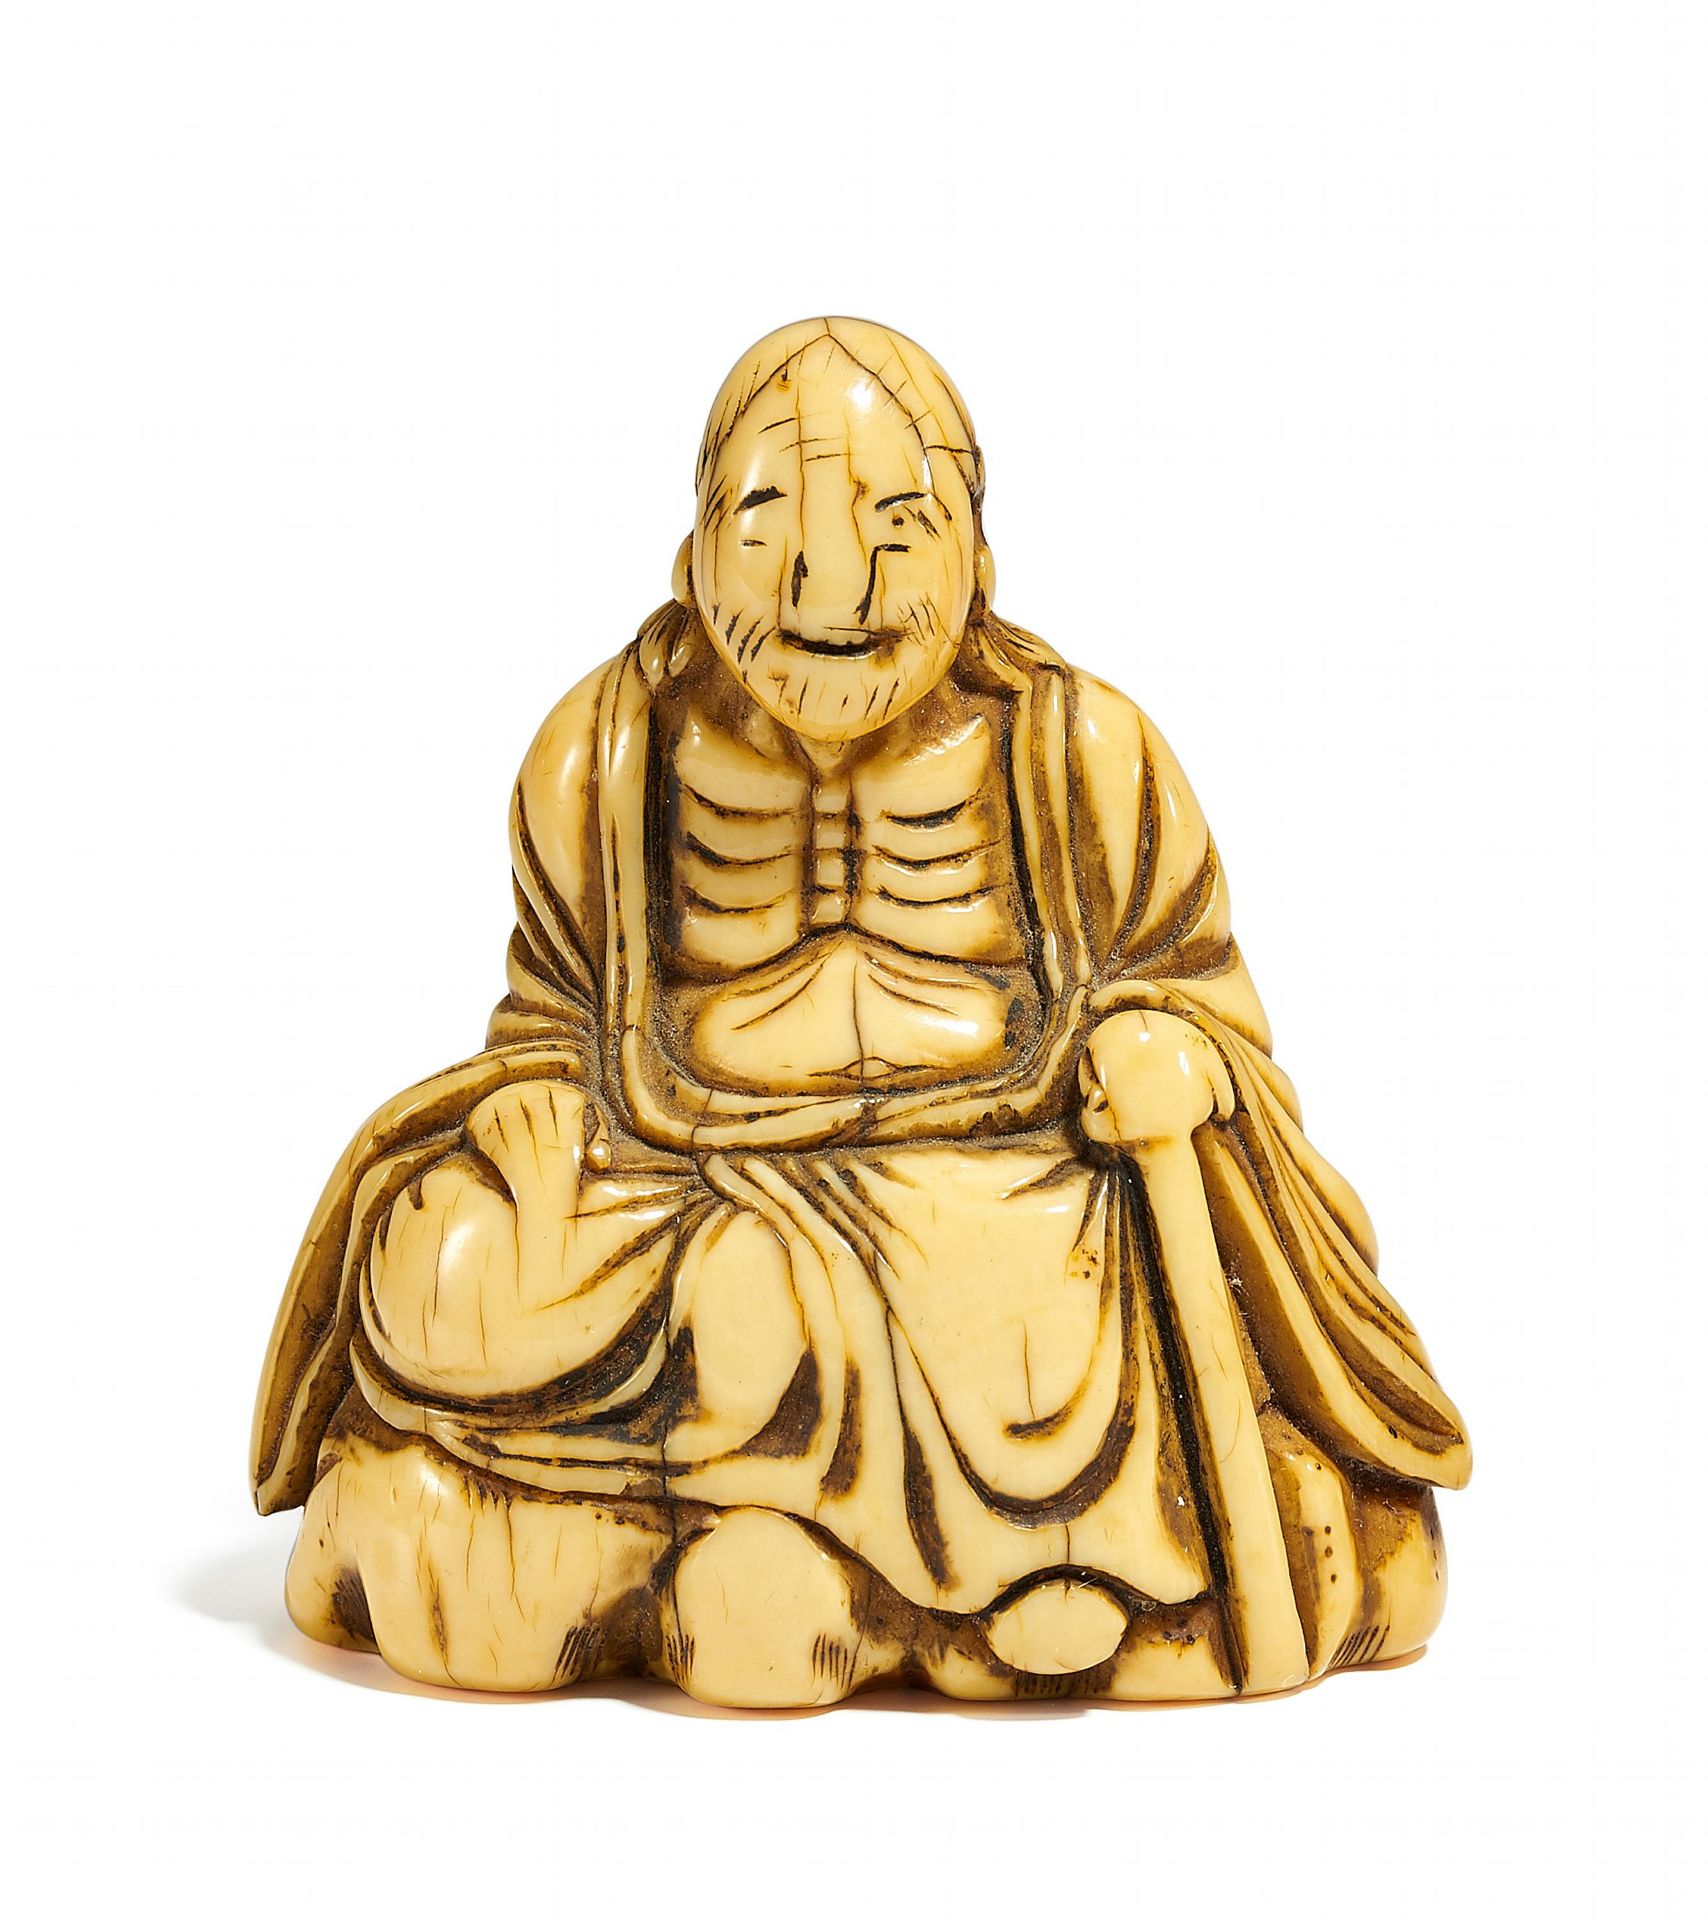 NETSUKE: CHINESISCHER BUDDHIST. Japan. Edo-Zeit. 18. Jh. Elfenbein. Sitzend auf einem Felsen, mit